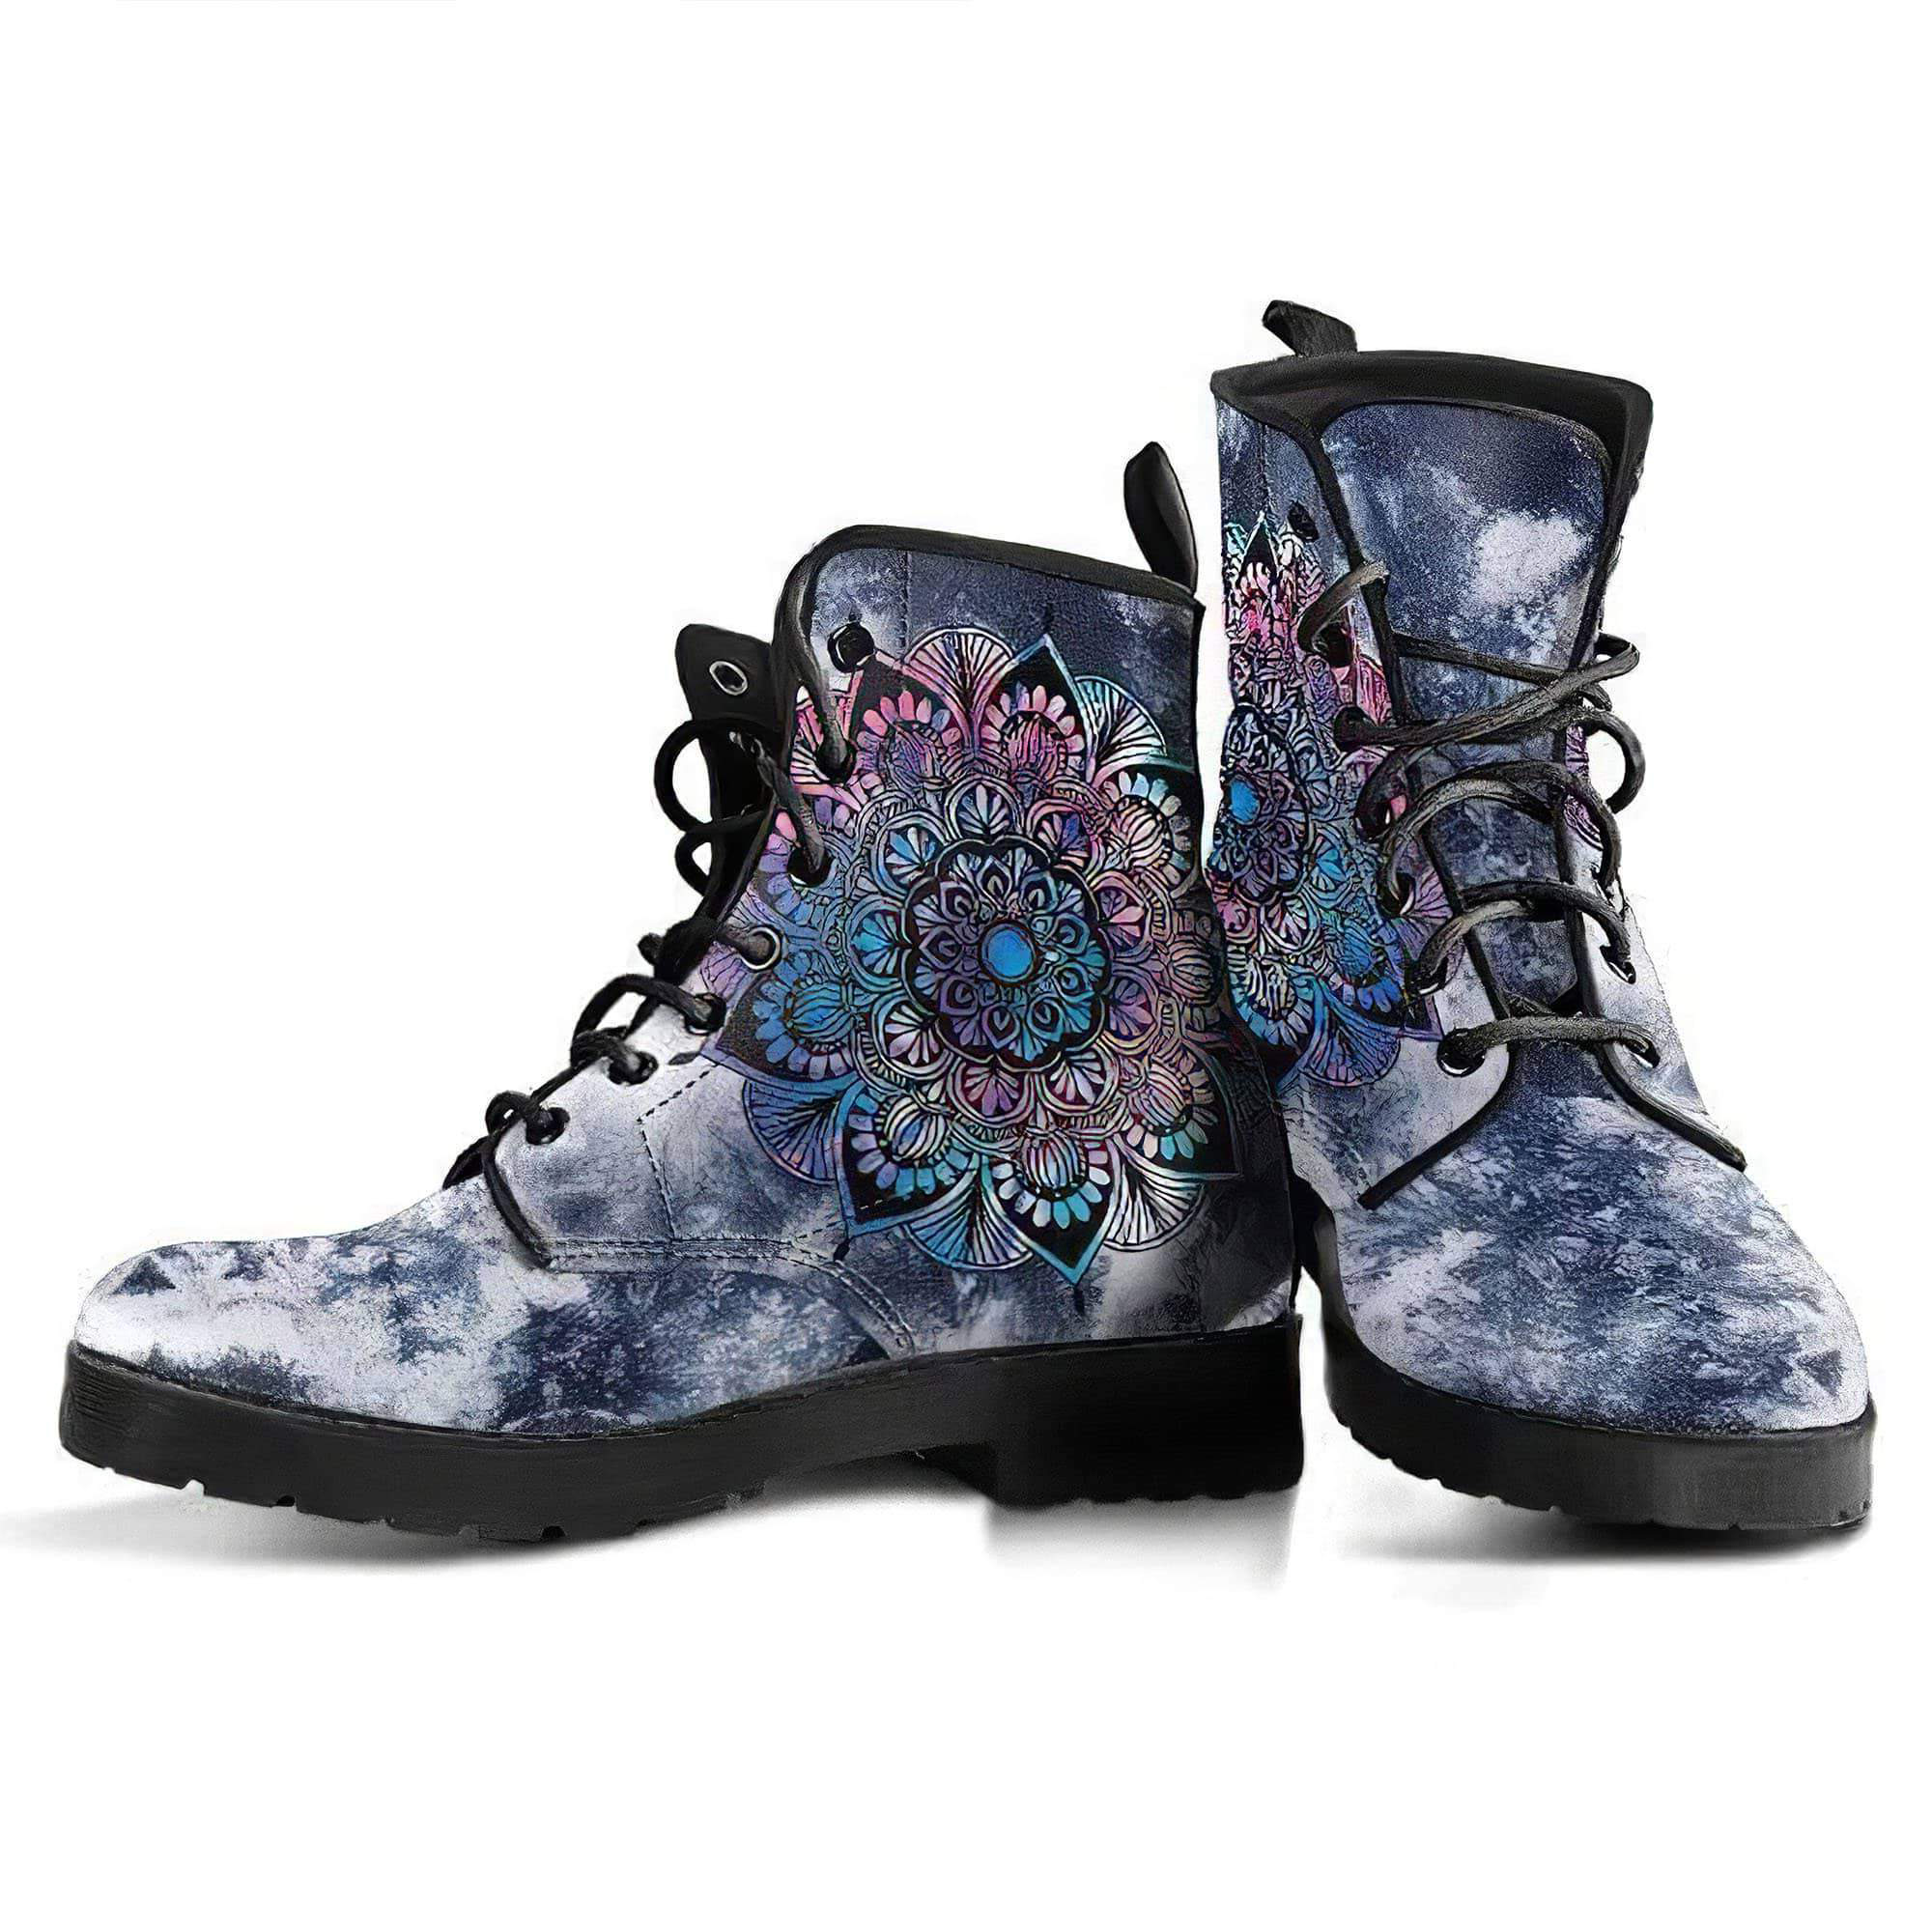 tiedye-mandala-women-s-leather-boots-women-s-leather-boots-12051965935677.jpg